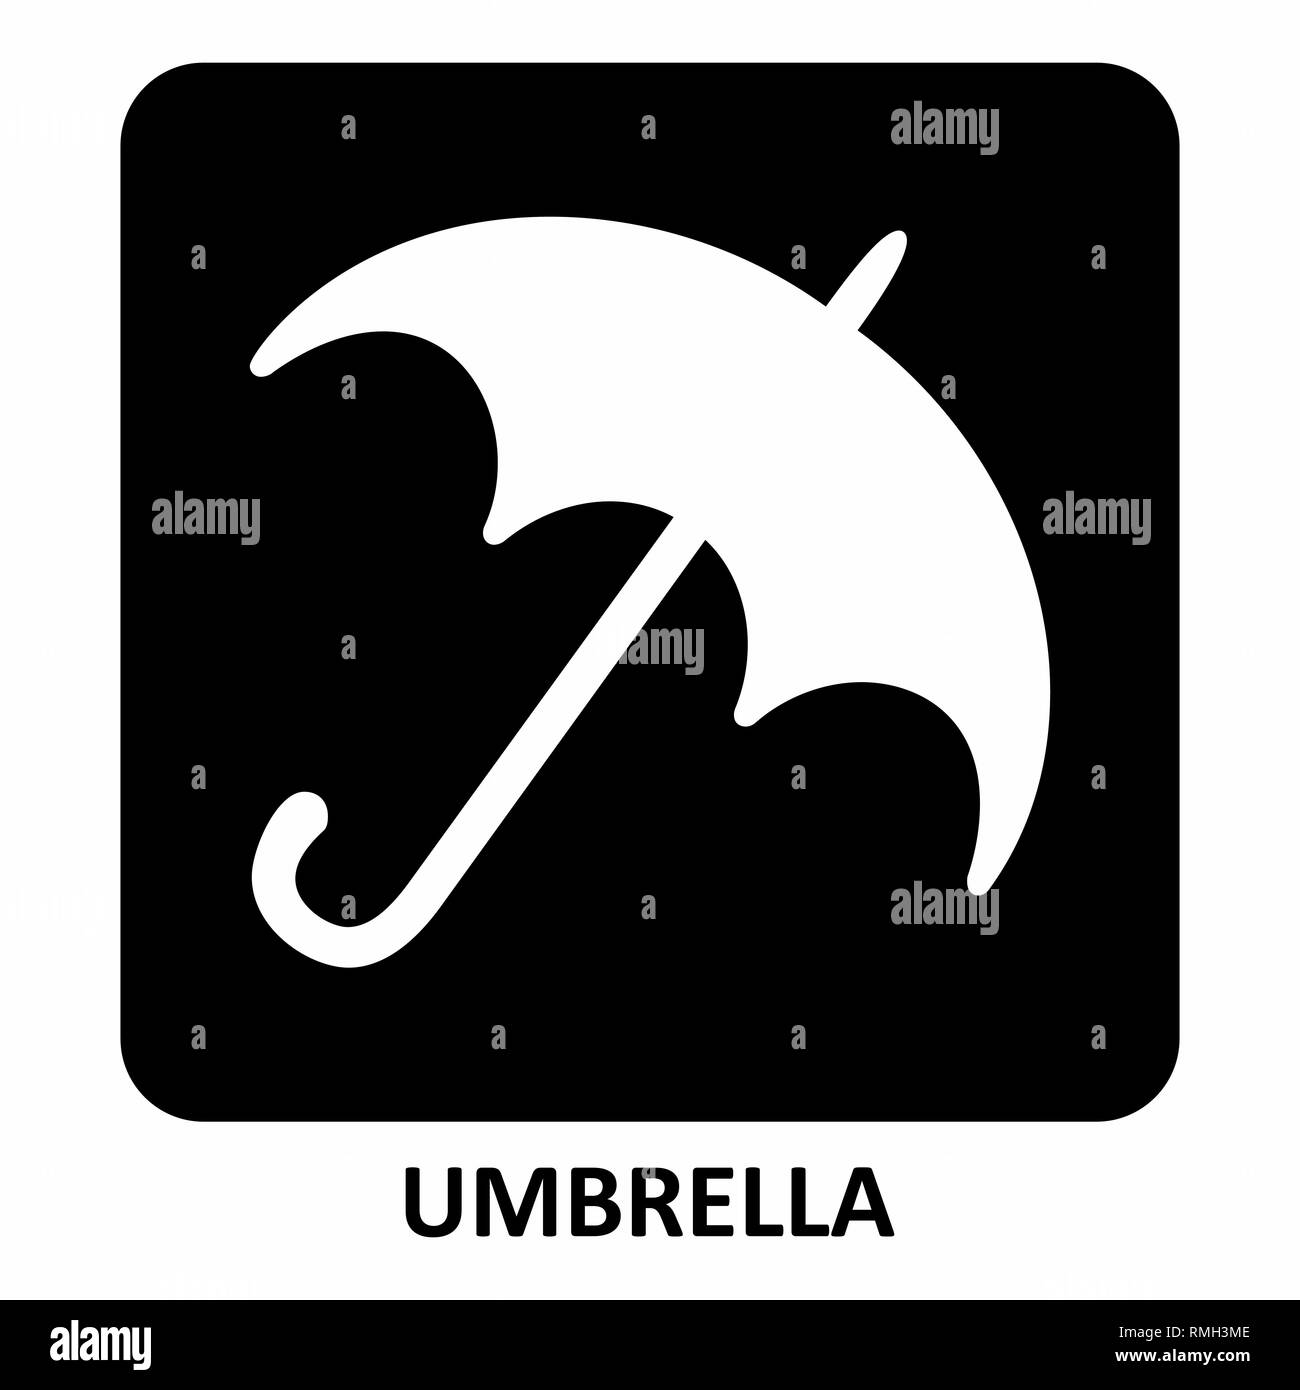 The black and white Umbrella icon illustration Stock Vector